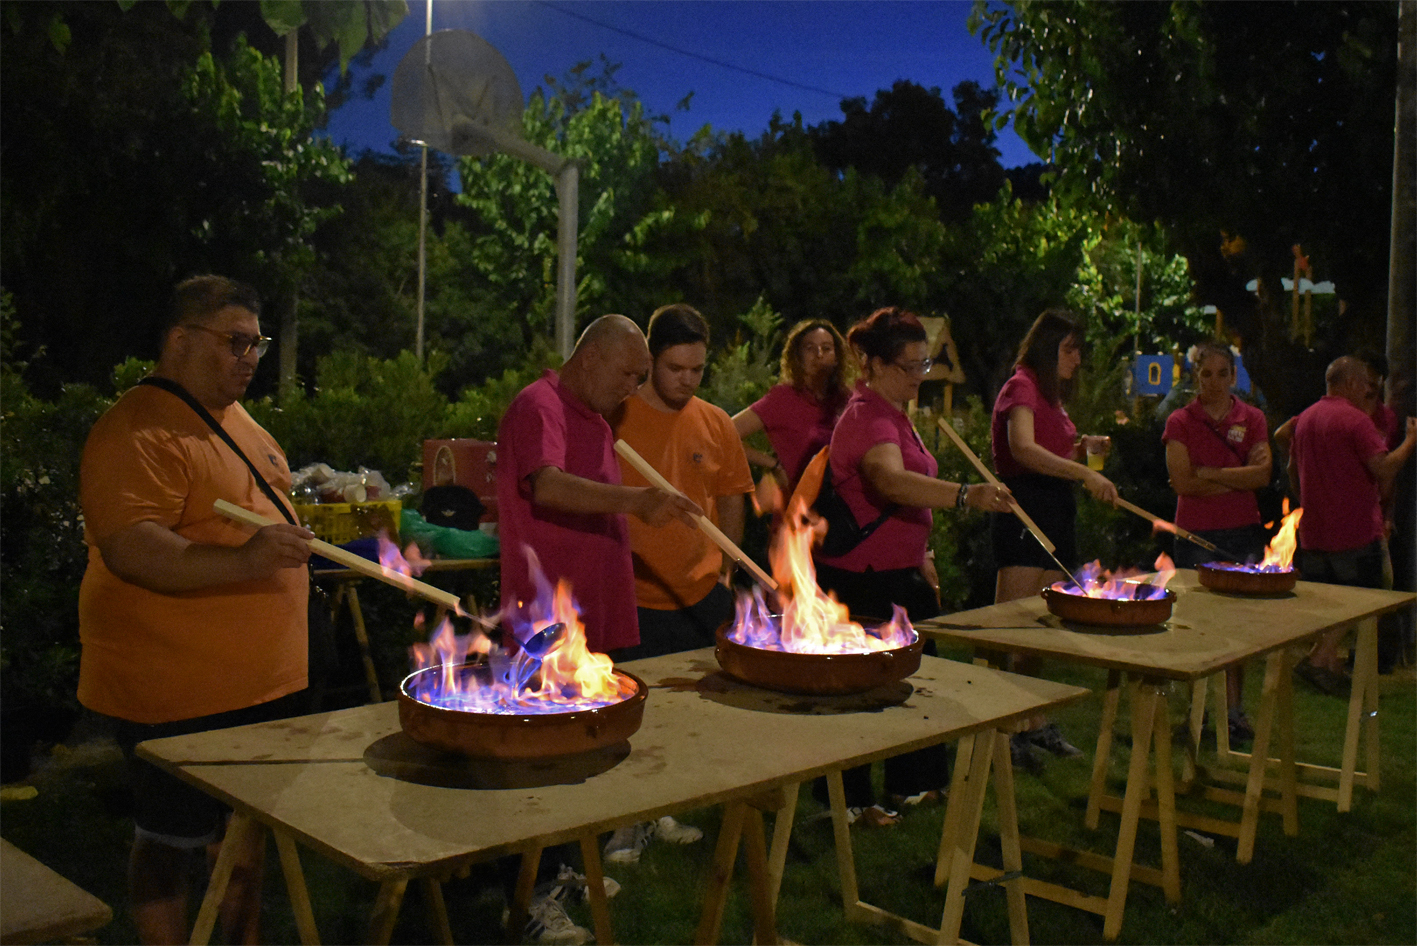 Preparació del rom cremat durant la cantada d'havaneres al Parc Municipal Macary i Viader, dins de la Festa Major de Súria 2023.